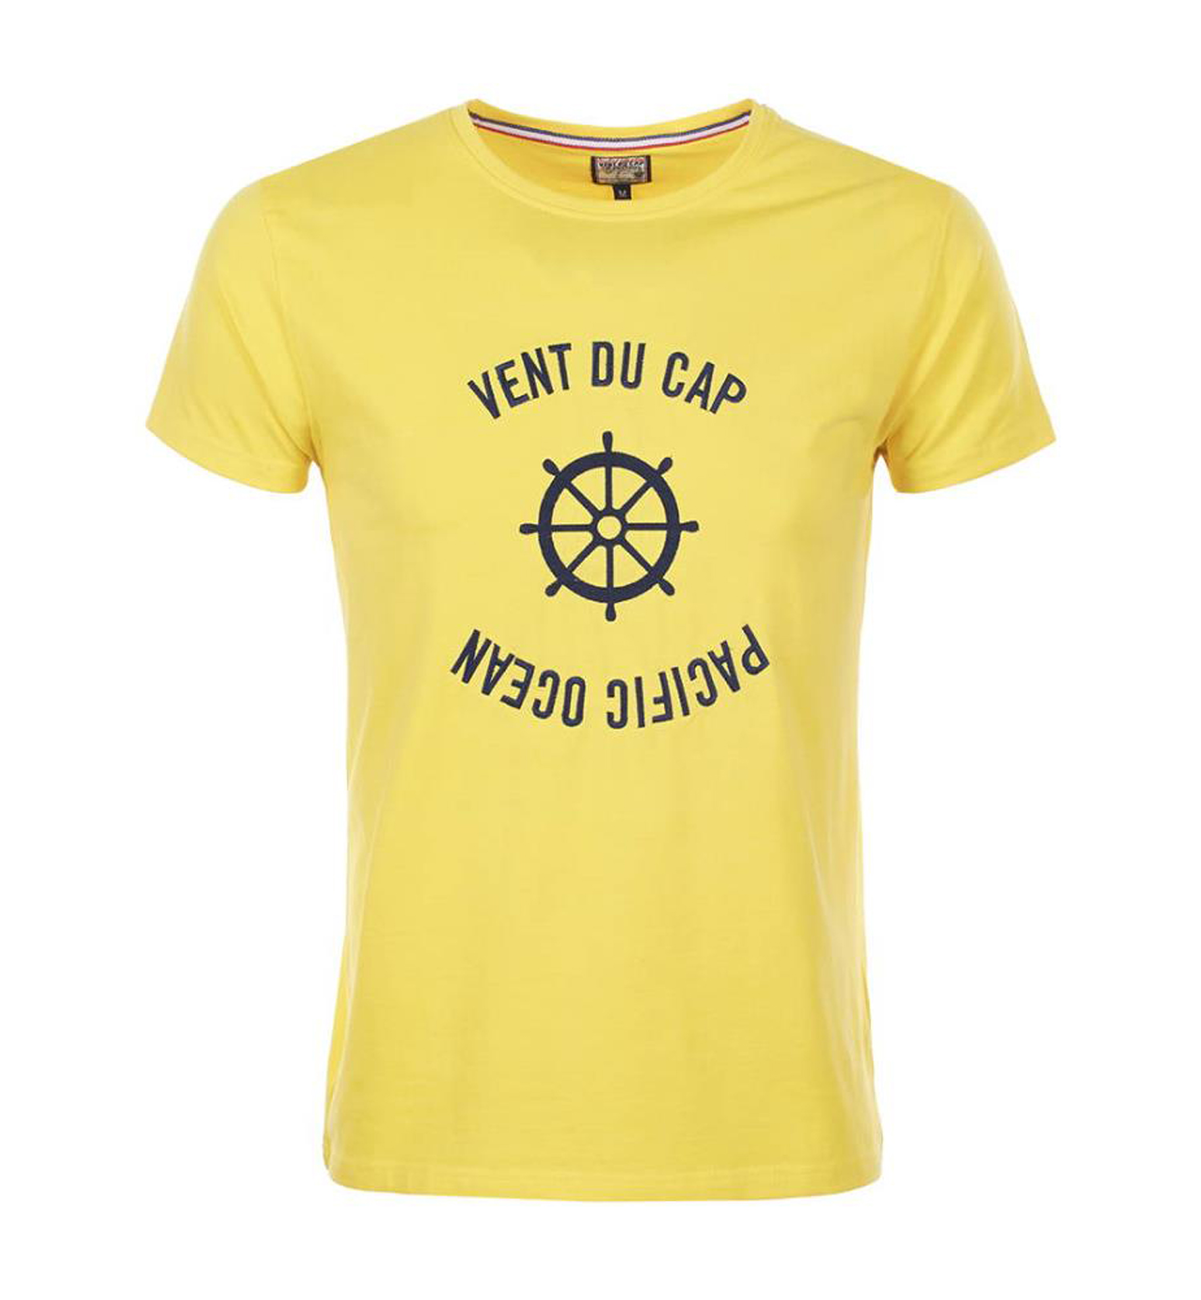 Mode- Lifestyle Garçon Vent Du Cap T-shirt Manches Courtes Garçon Echeryl